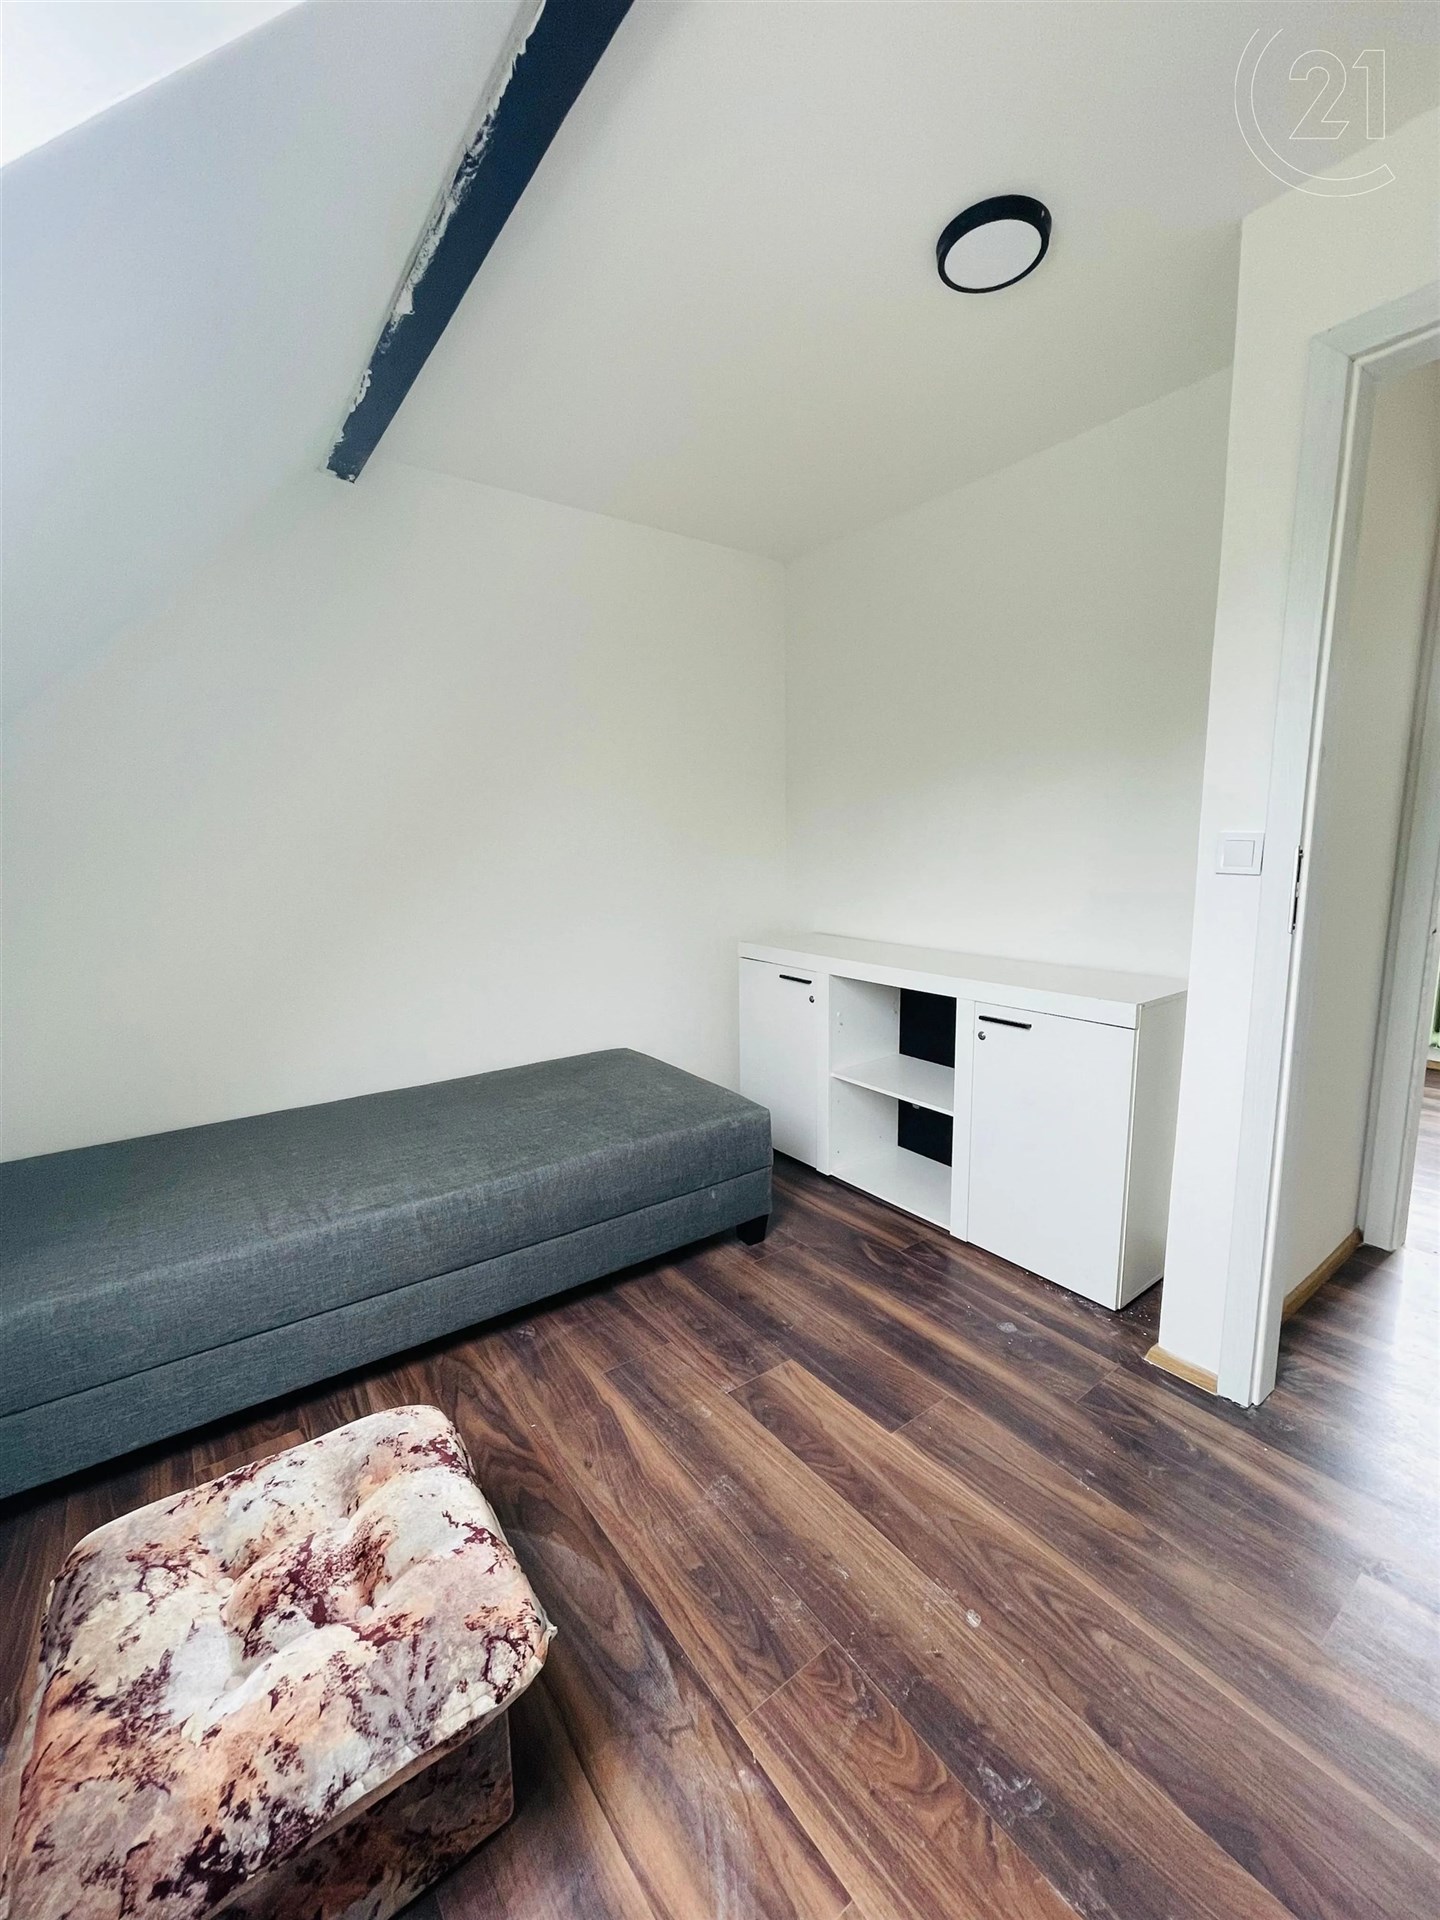 obývací pokoj s klenutý strop, trámový strop, a dřevěná podlaha